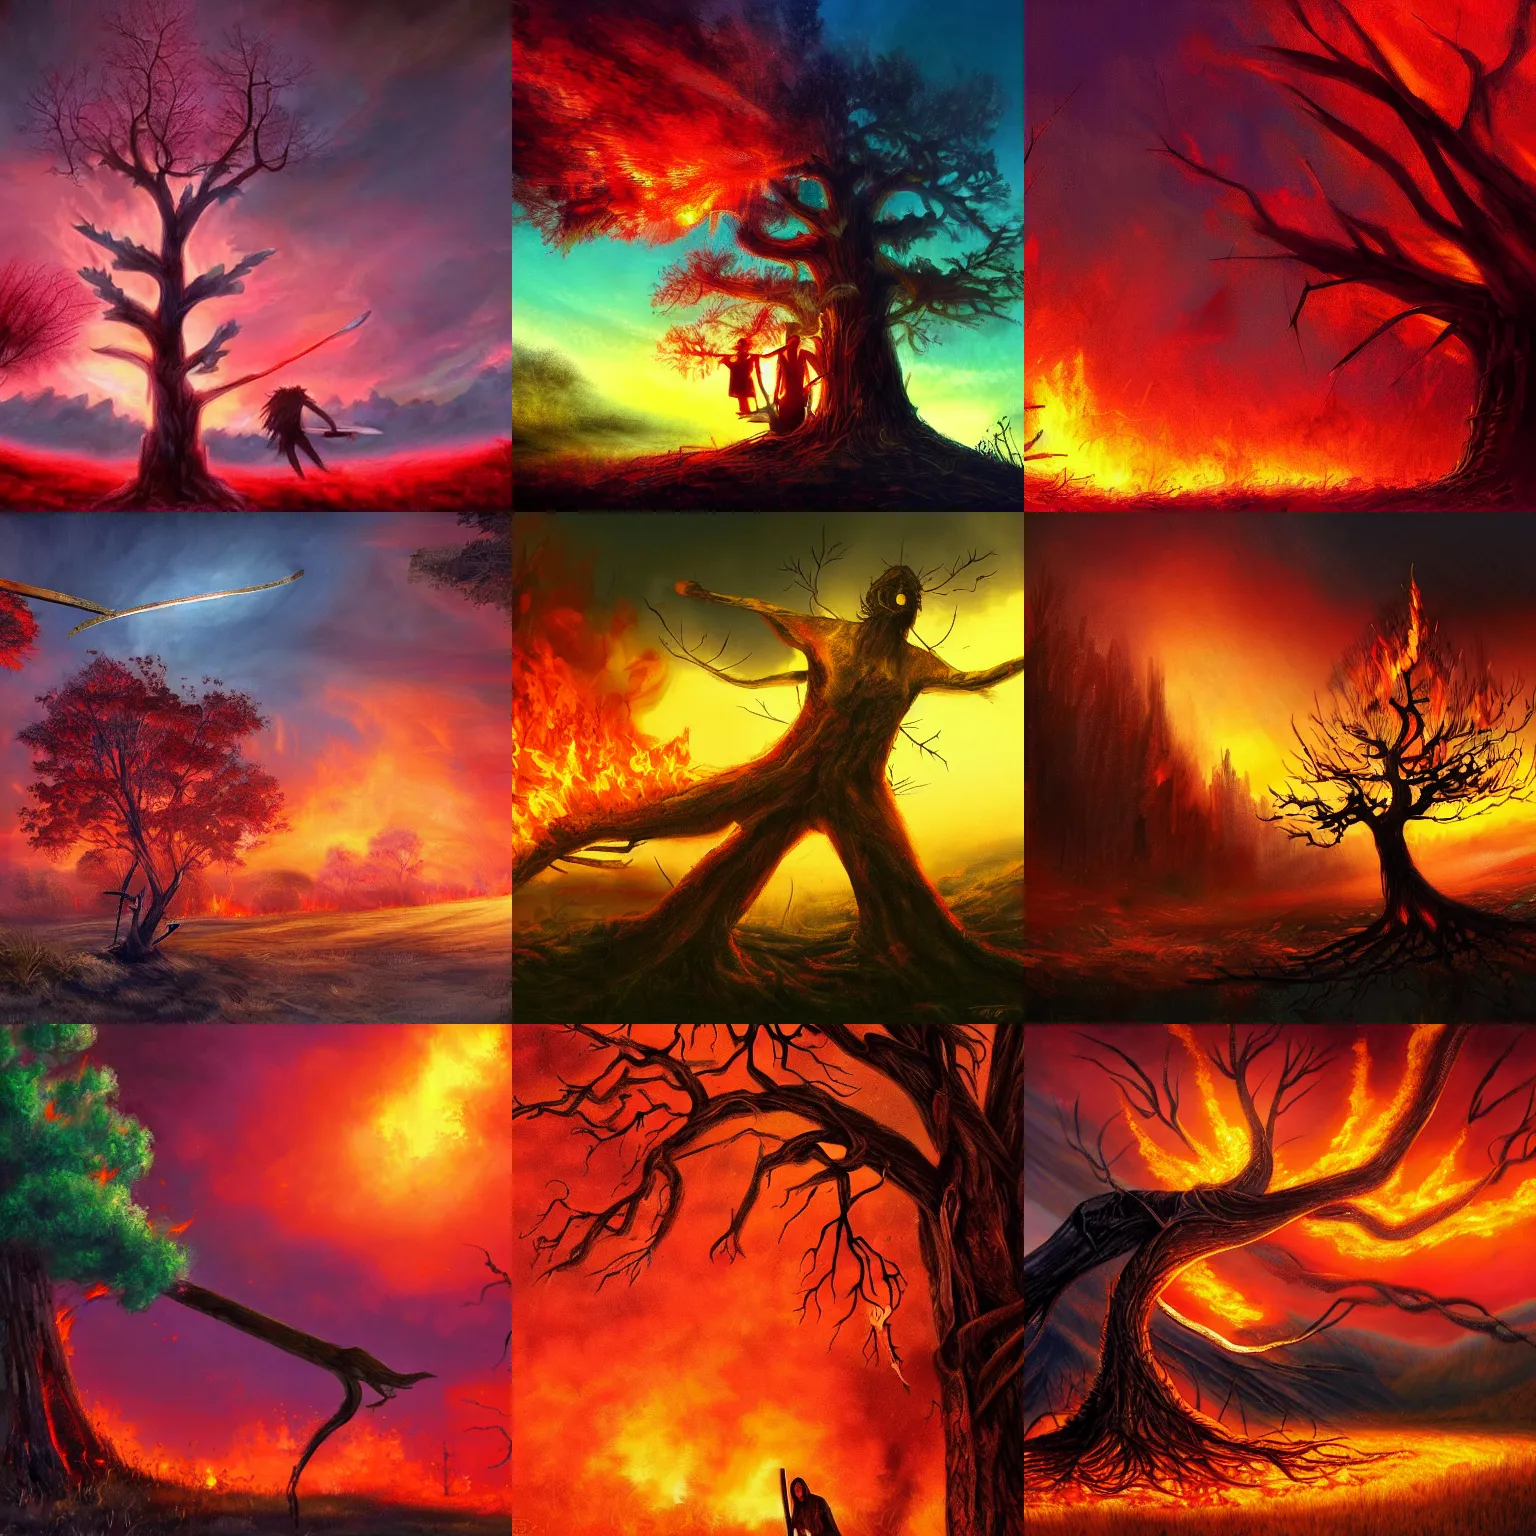 Prompt: machete wielding tree on fire, fantasy art, fantasy art wallpaper, brightly lit, red sky